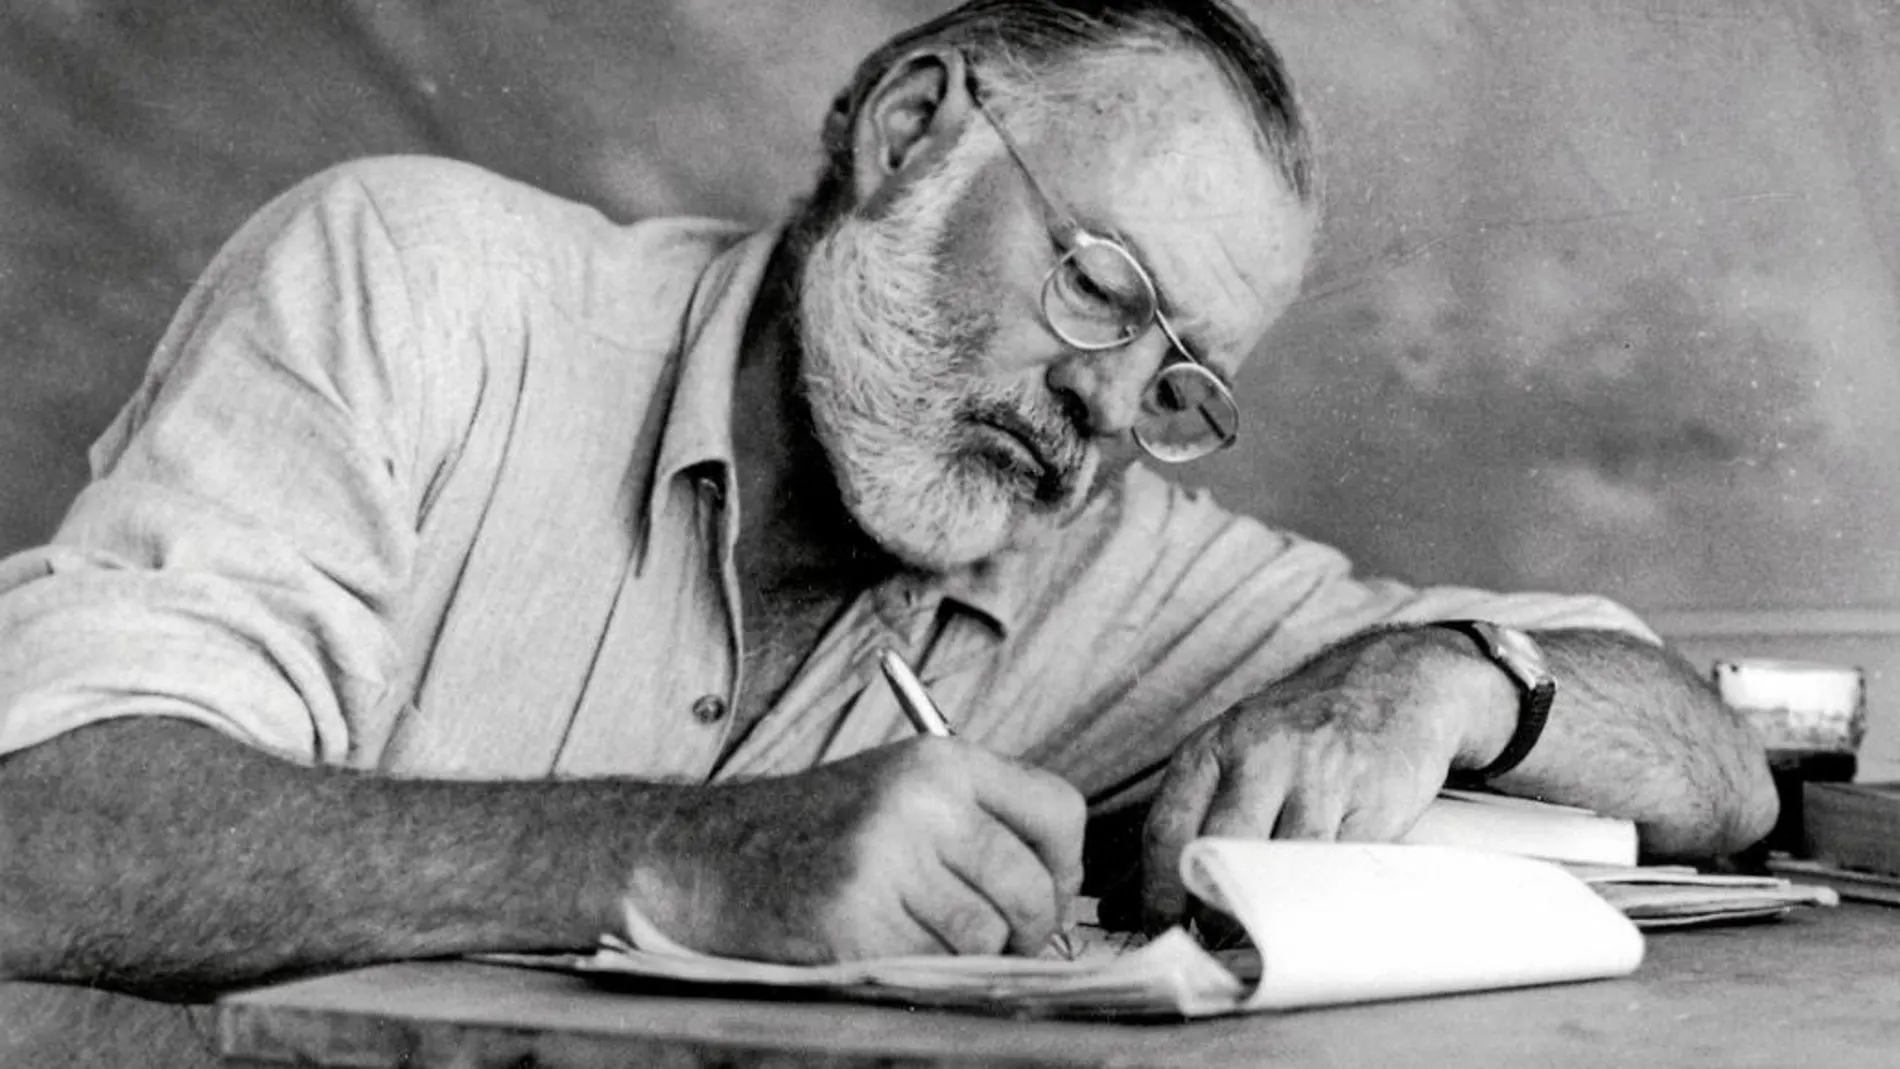 La carrera del Premio Nobel Ernest Hemingway pendió de un hilo tras perder la maleta con sus primeros relatos y hasta una novela